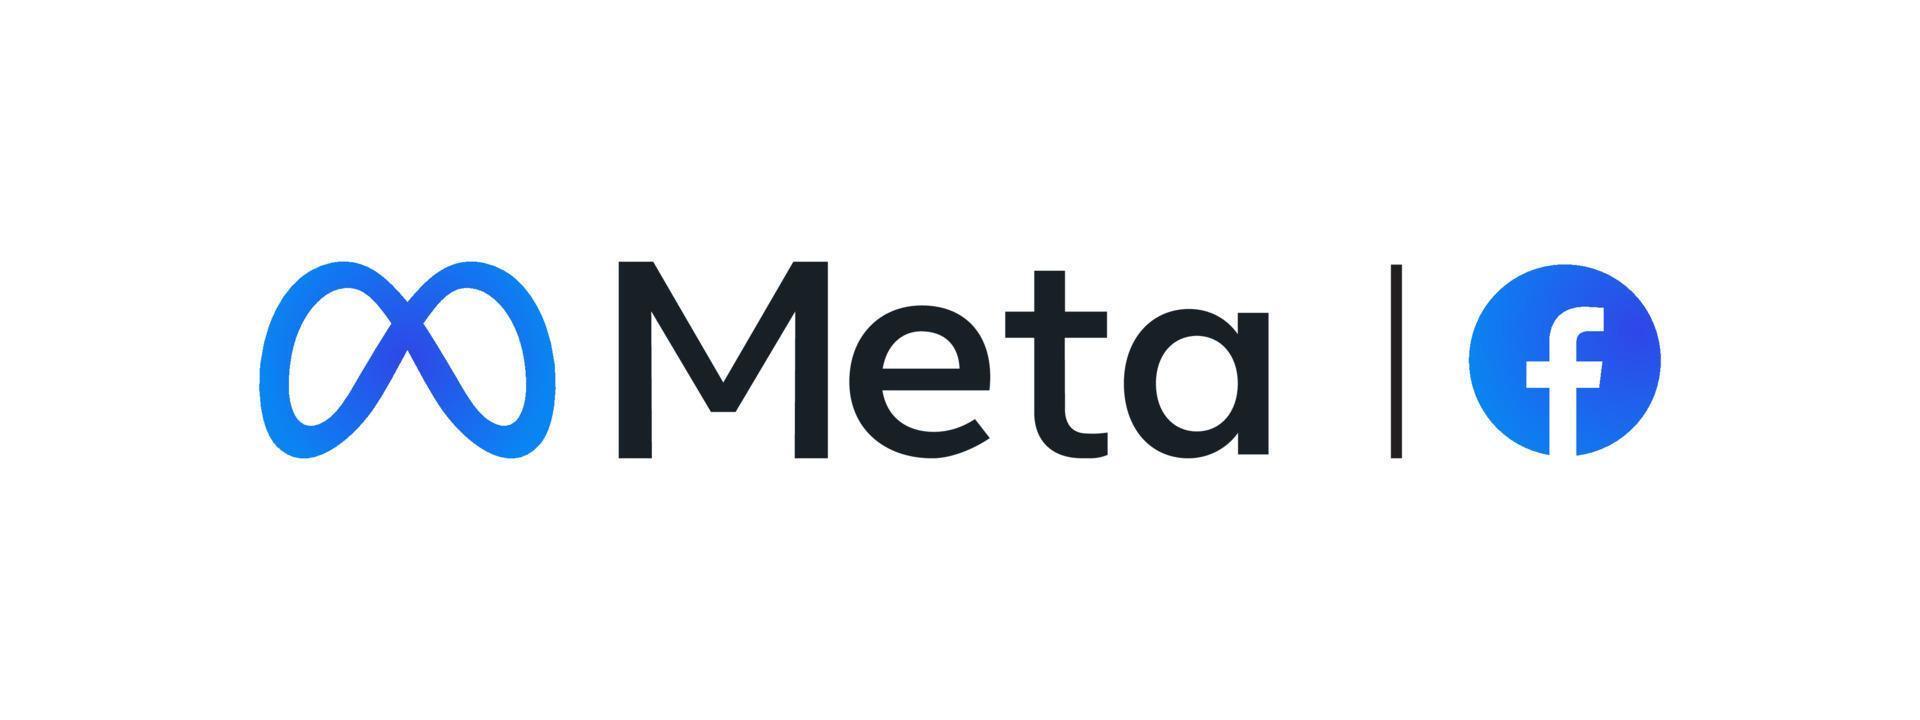 Meta Facebook rebranding concept. Editorial Facebook Logo 4263117 Vector  Art at Vecteezy